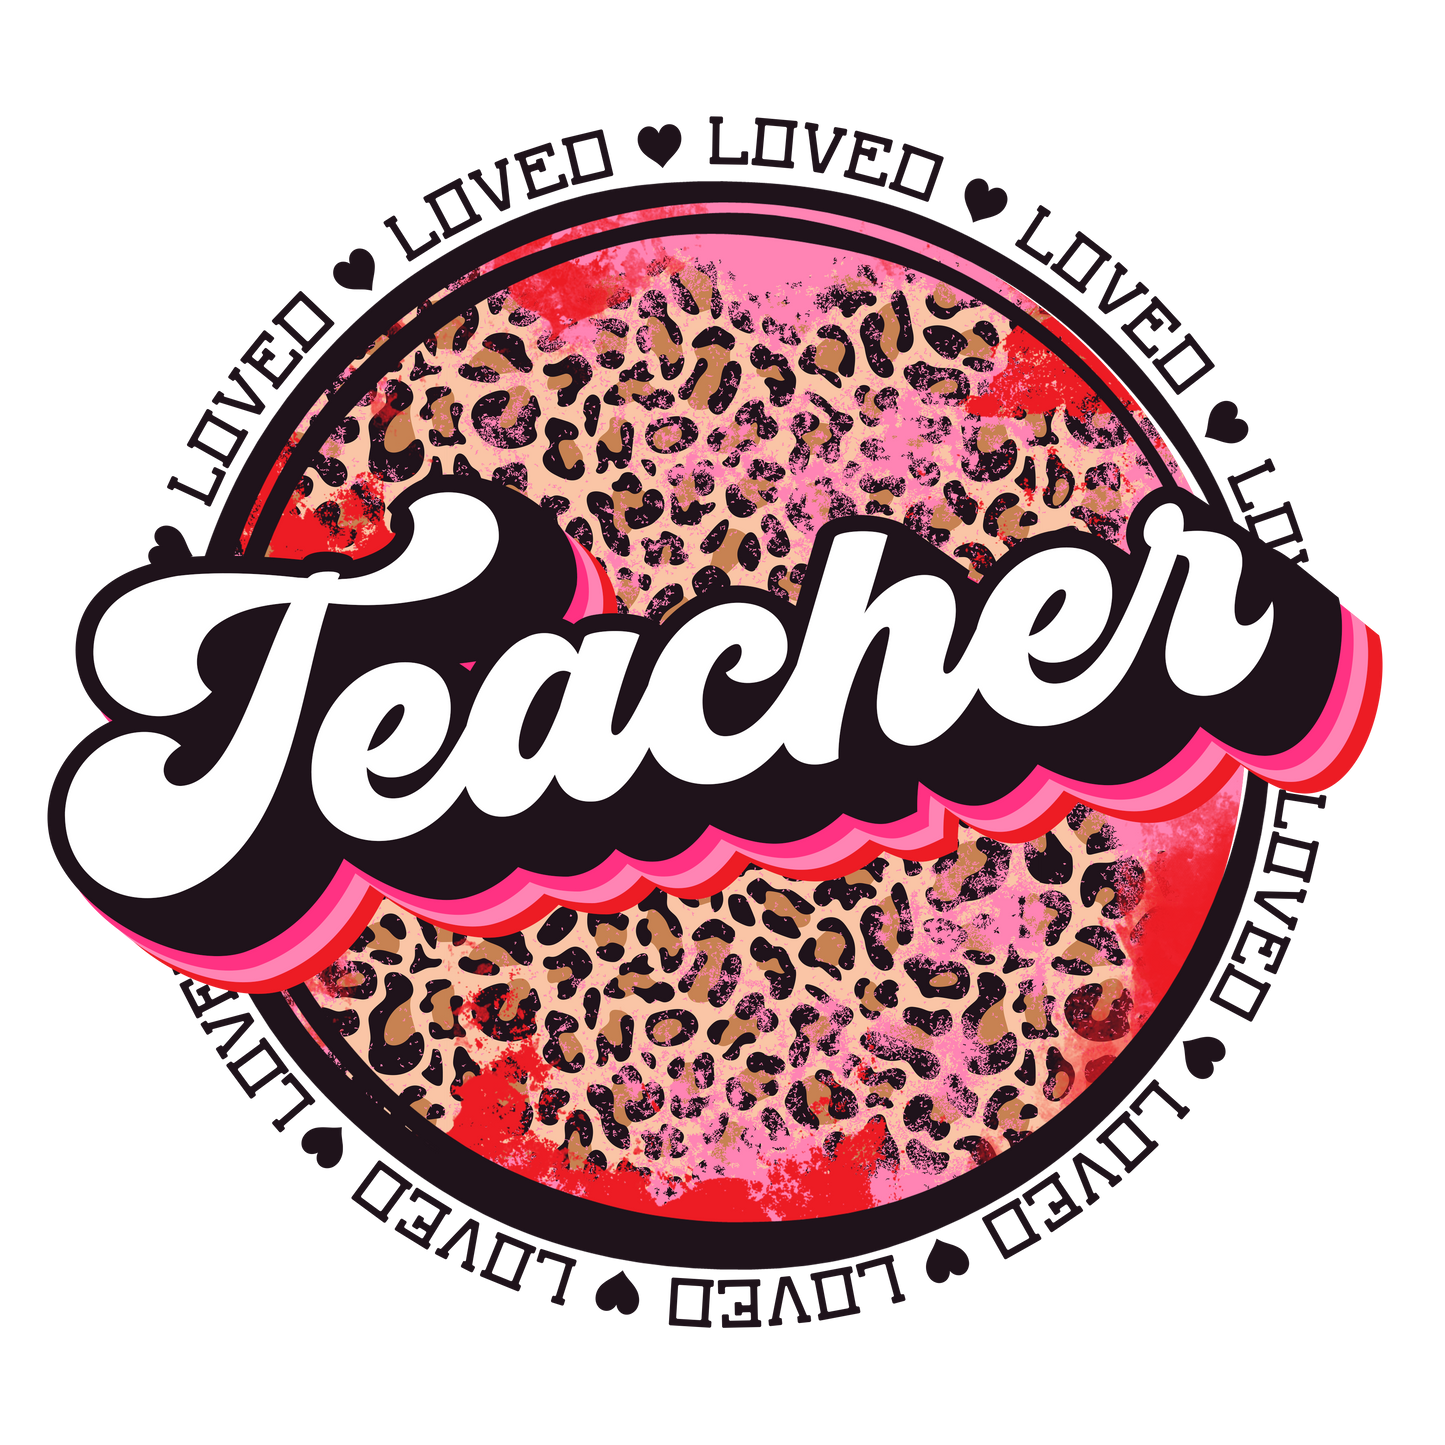 Loved Teacher Design Transfer